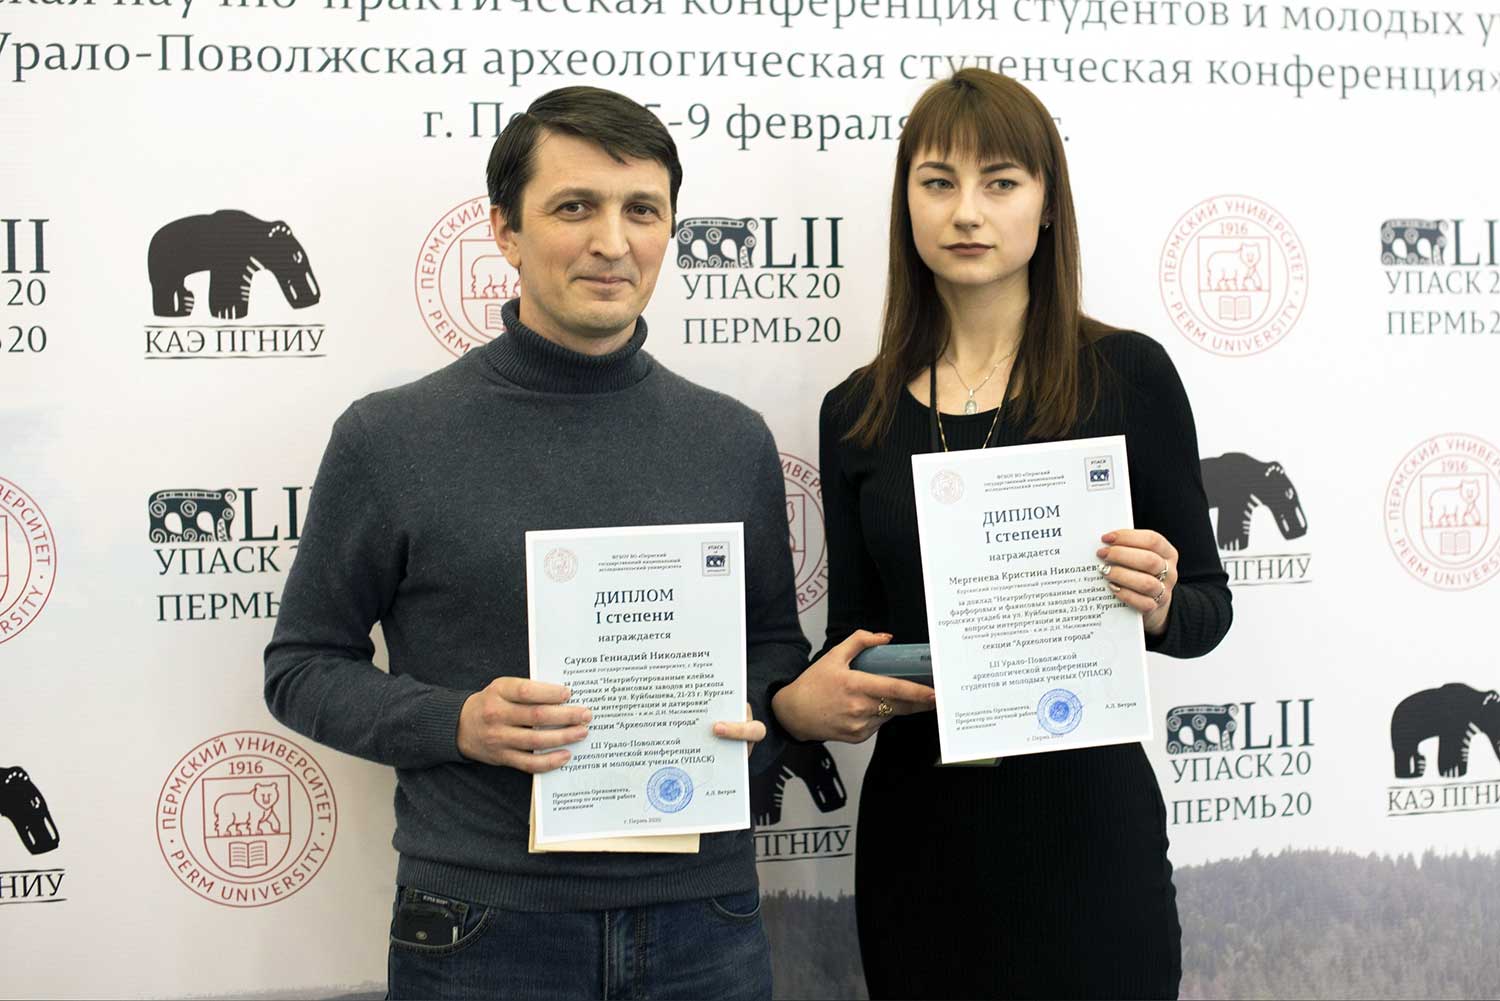 Вручение дипломов на УПАСКе в г. Перми - Геннадий Сауков, Кристина Мергенева